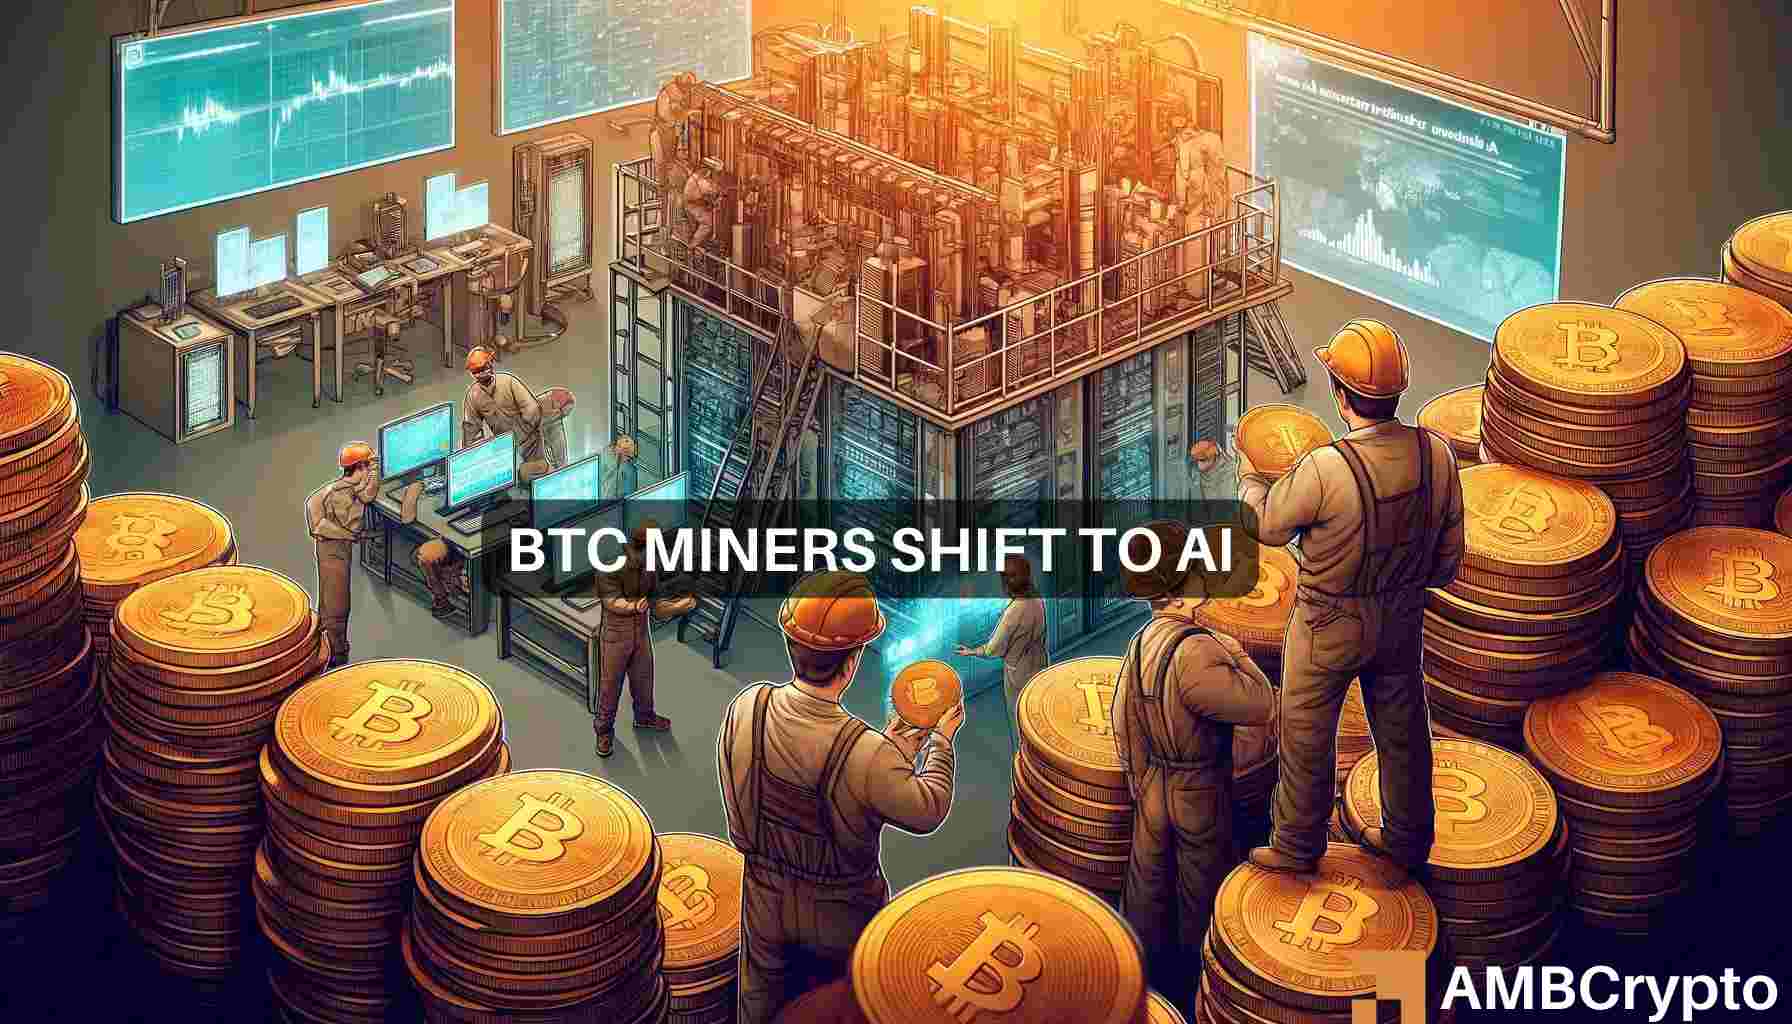 Bitcoin miners pivot to AI: New revenue stream post-halving?